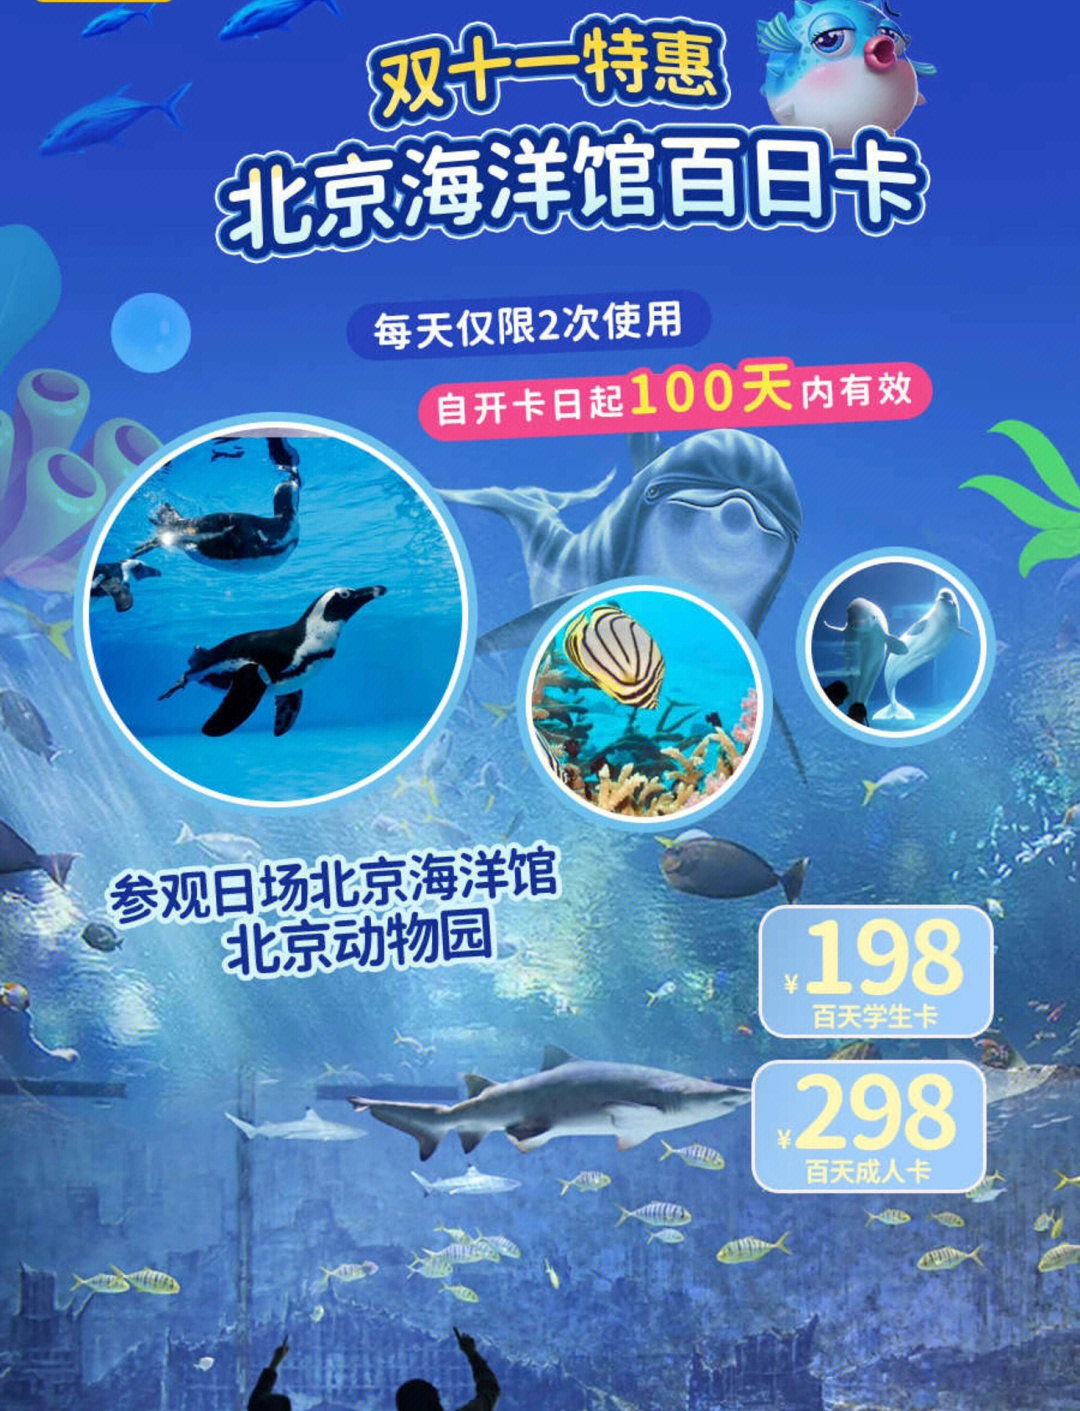 【双11】北京海洋馆 北京动物园百天卡兑卡后100天内有效,去2次就回本